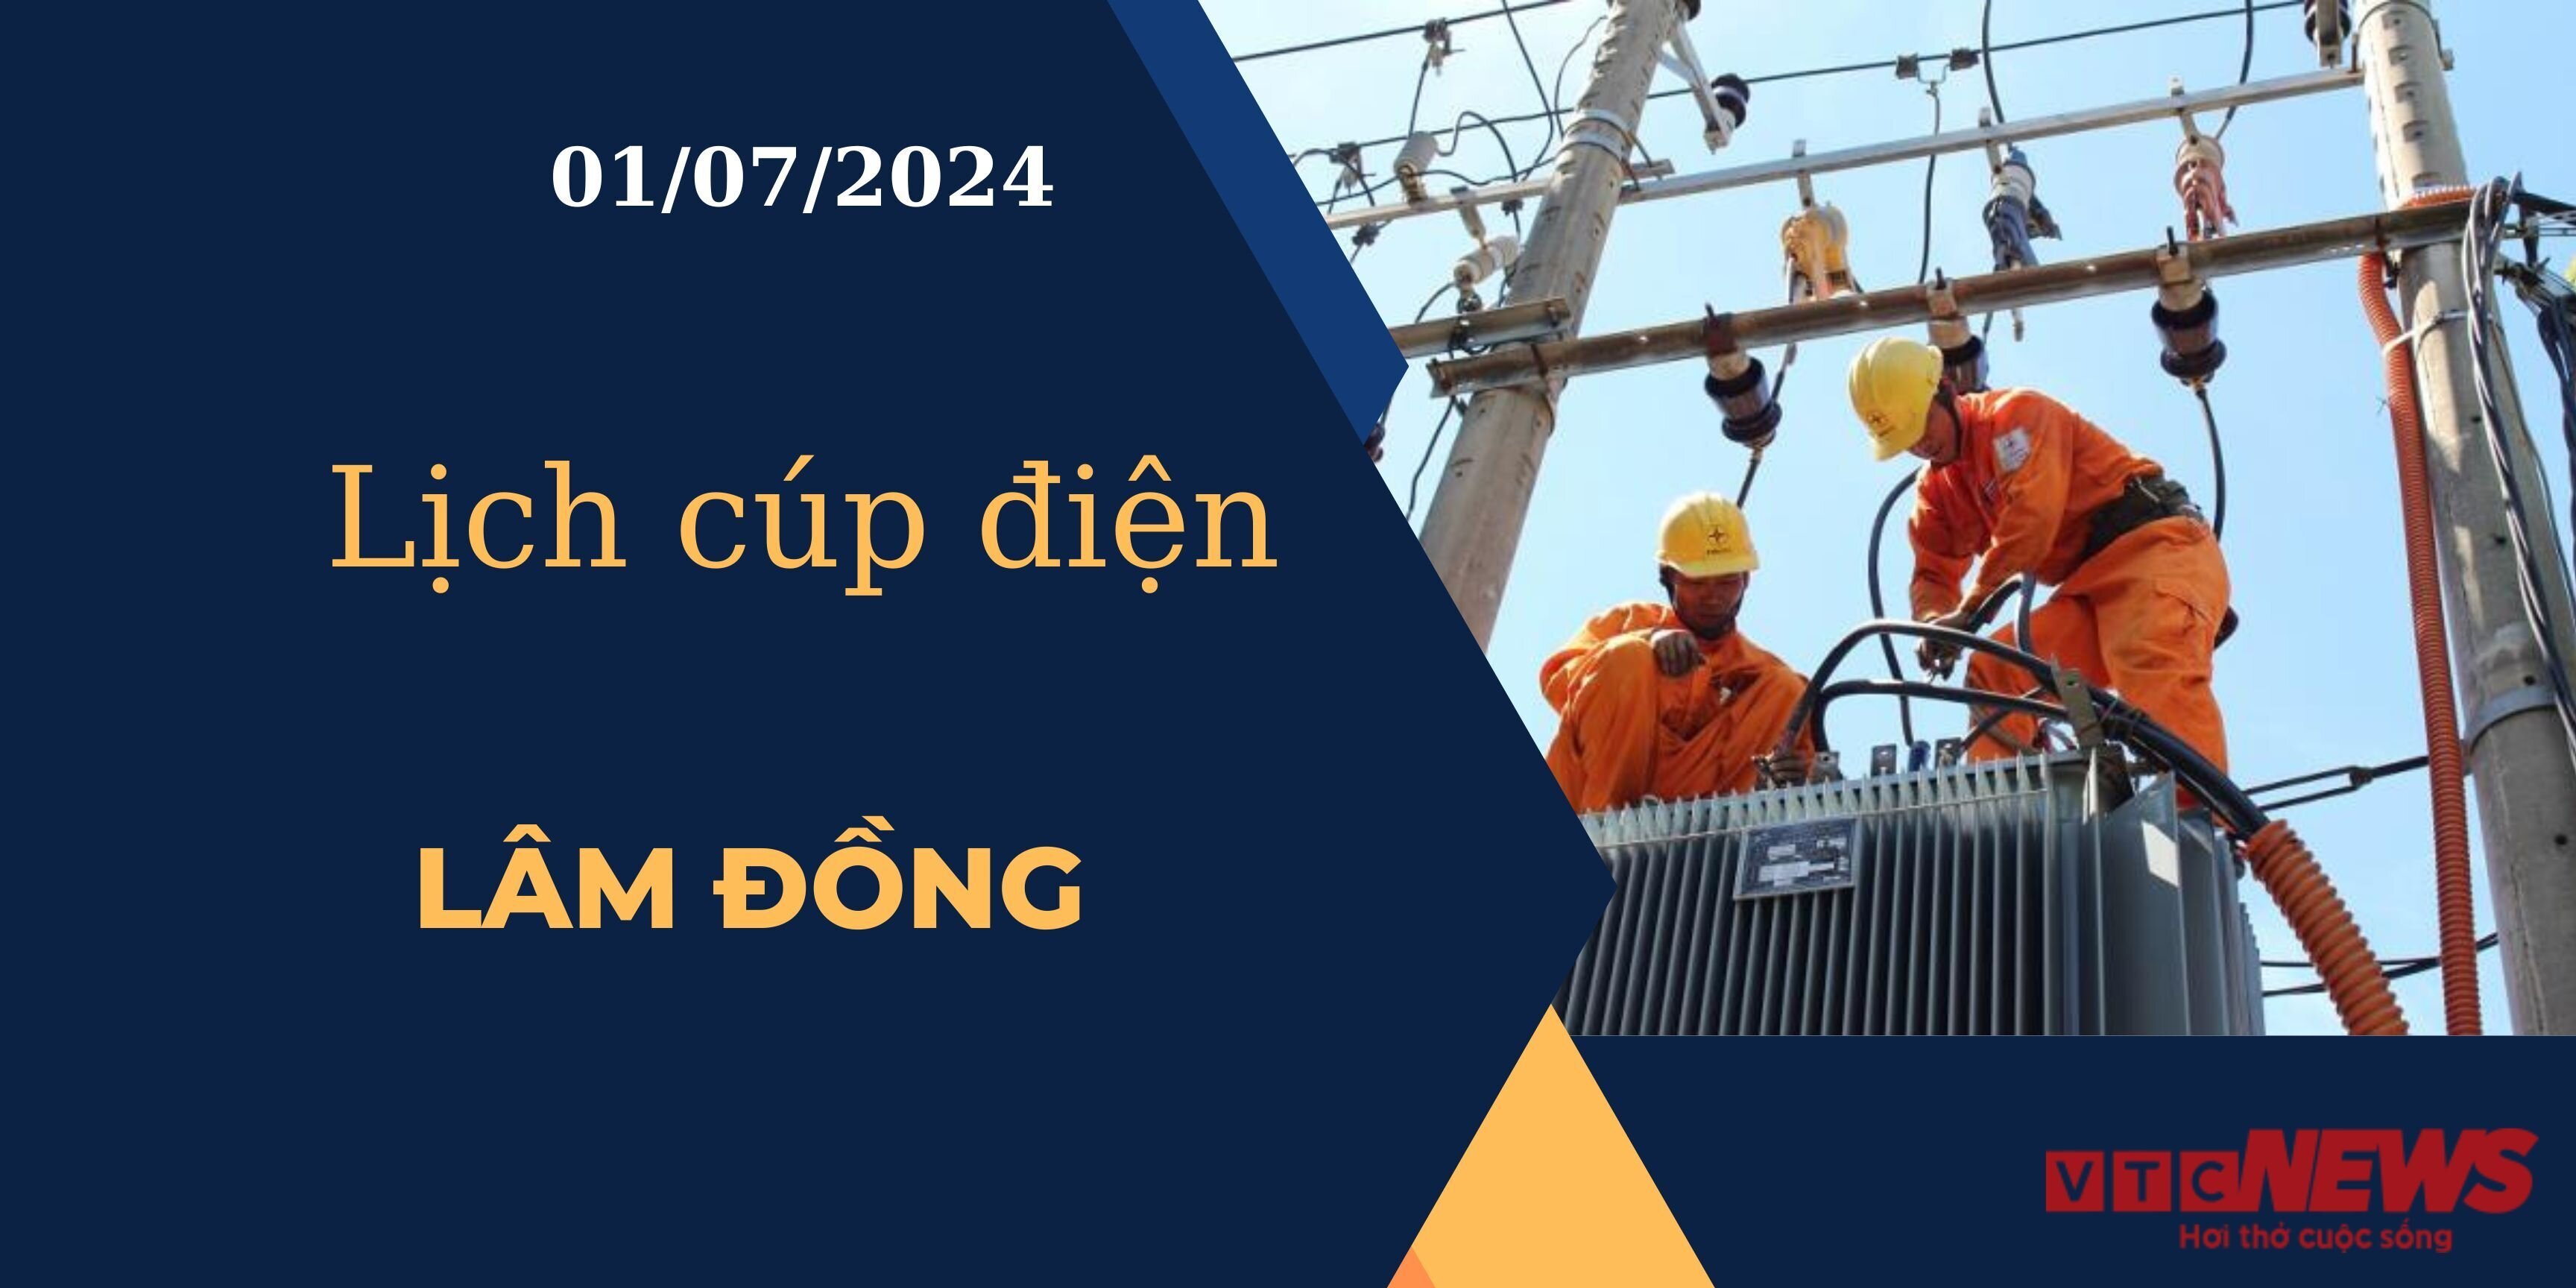 Lịch cúp điện hôm nay ngày 01/07/2024 tại Lâm Đồng